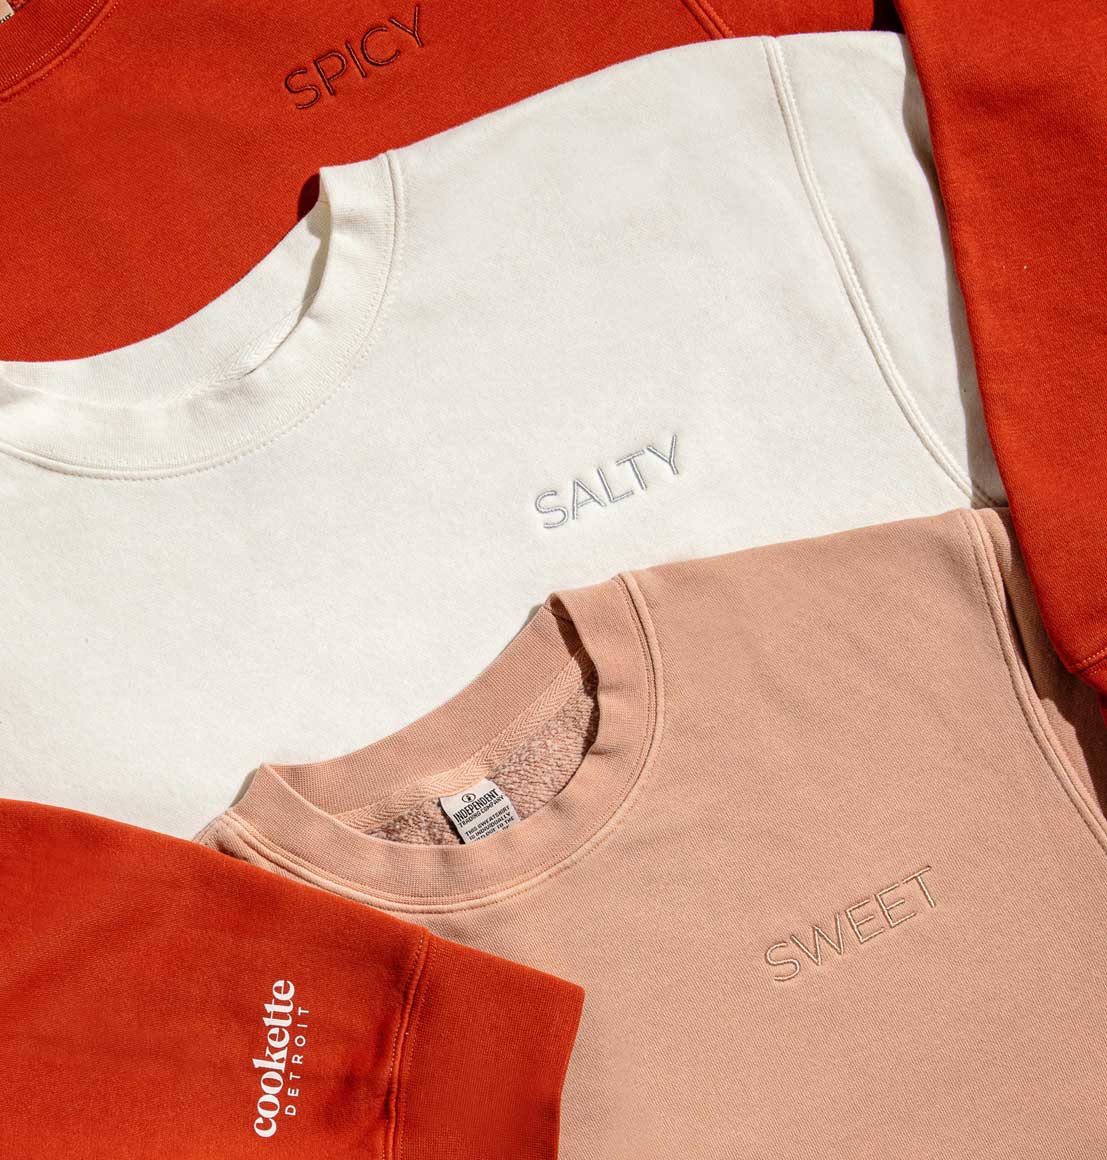 Flavor Mood Sweatshirt - SALTY